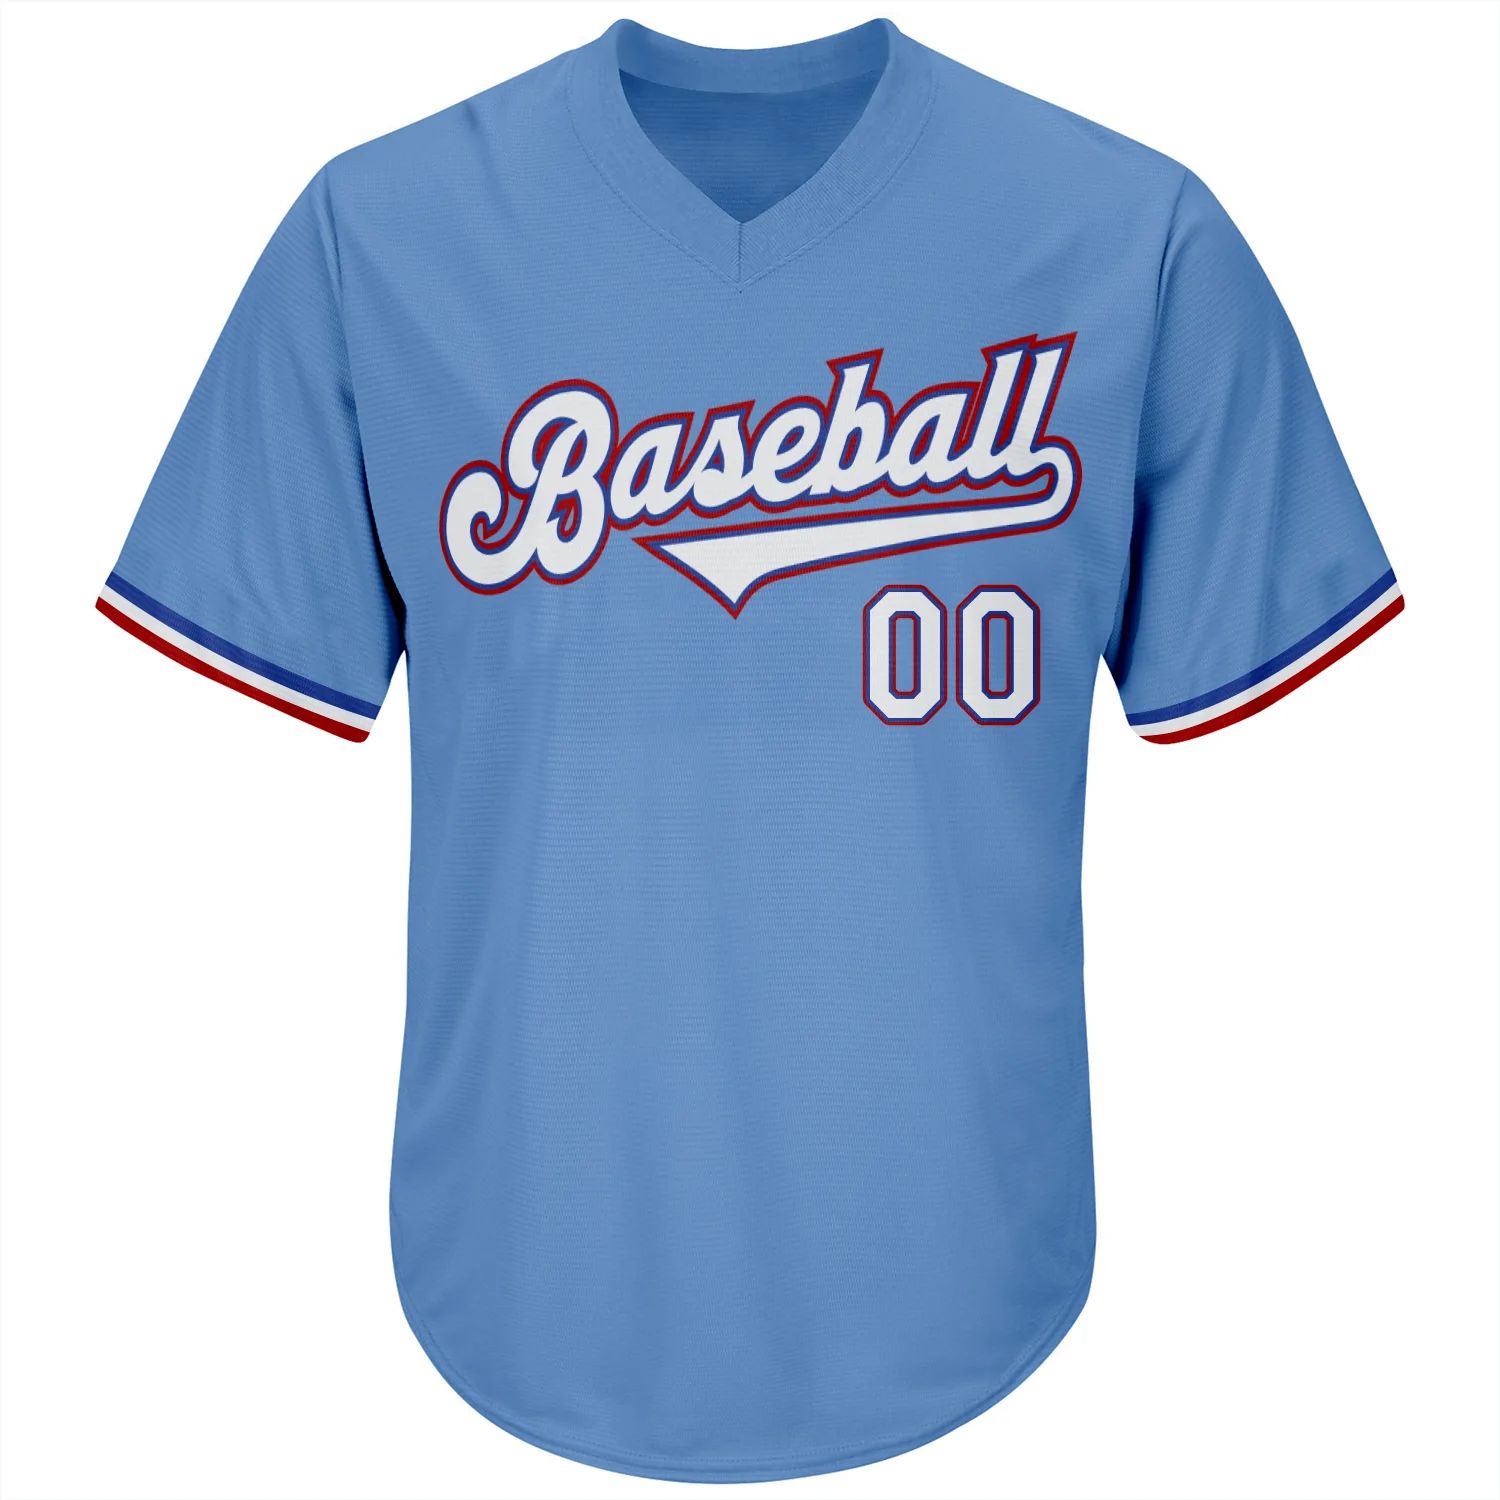 build-red-light-blue-baseball-white-jersey-authentic-throwback-elightblue00296-online-2.jpg